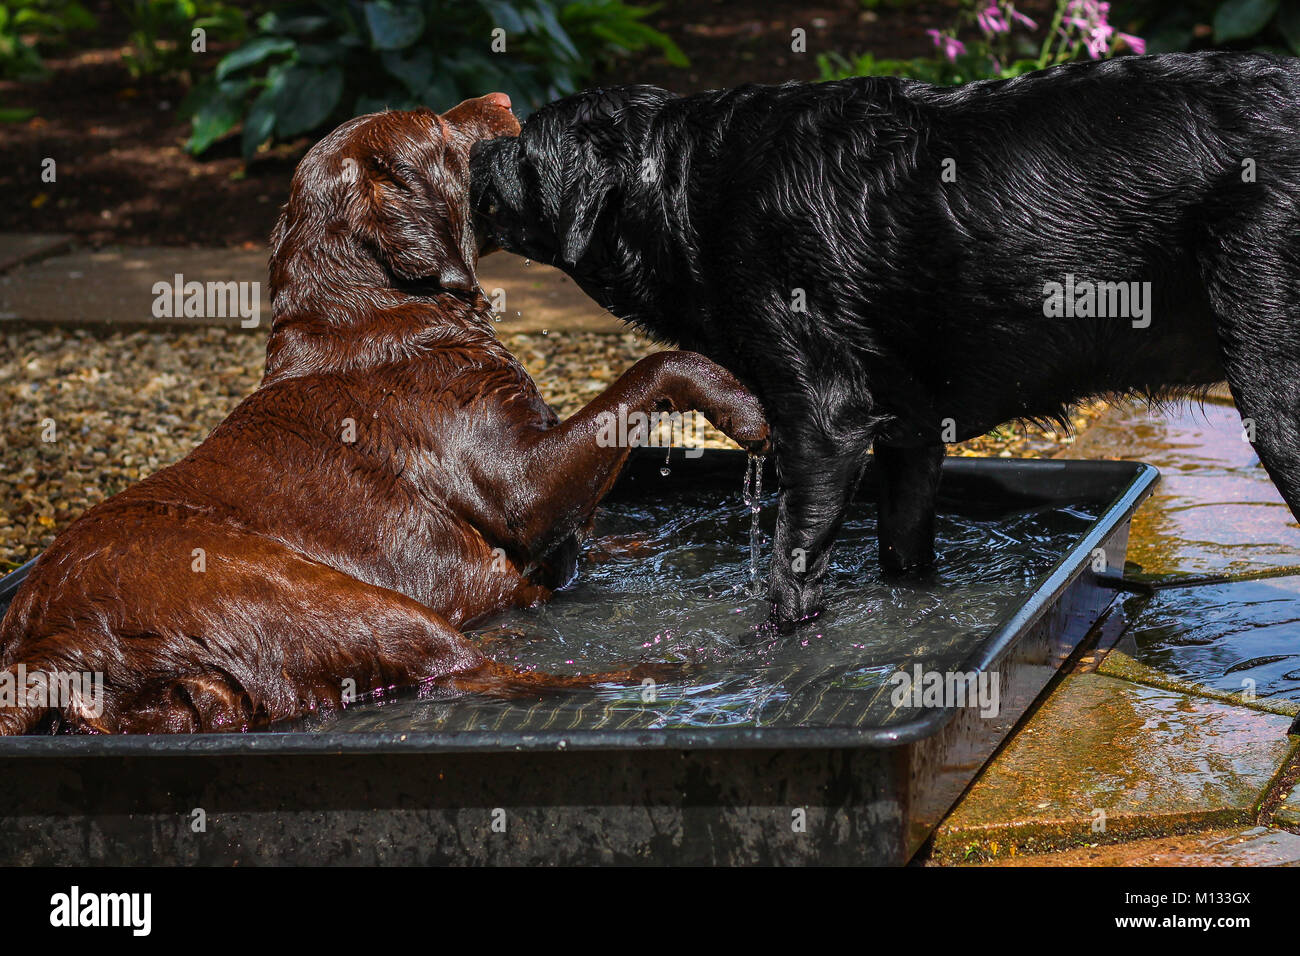 Zwei Hunde spielen in einem Pool von Wasser - braune und schwarze Labrador planschen in einem Pool von Wasser an einem warmen Sommertag Stockfoto